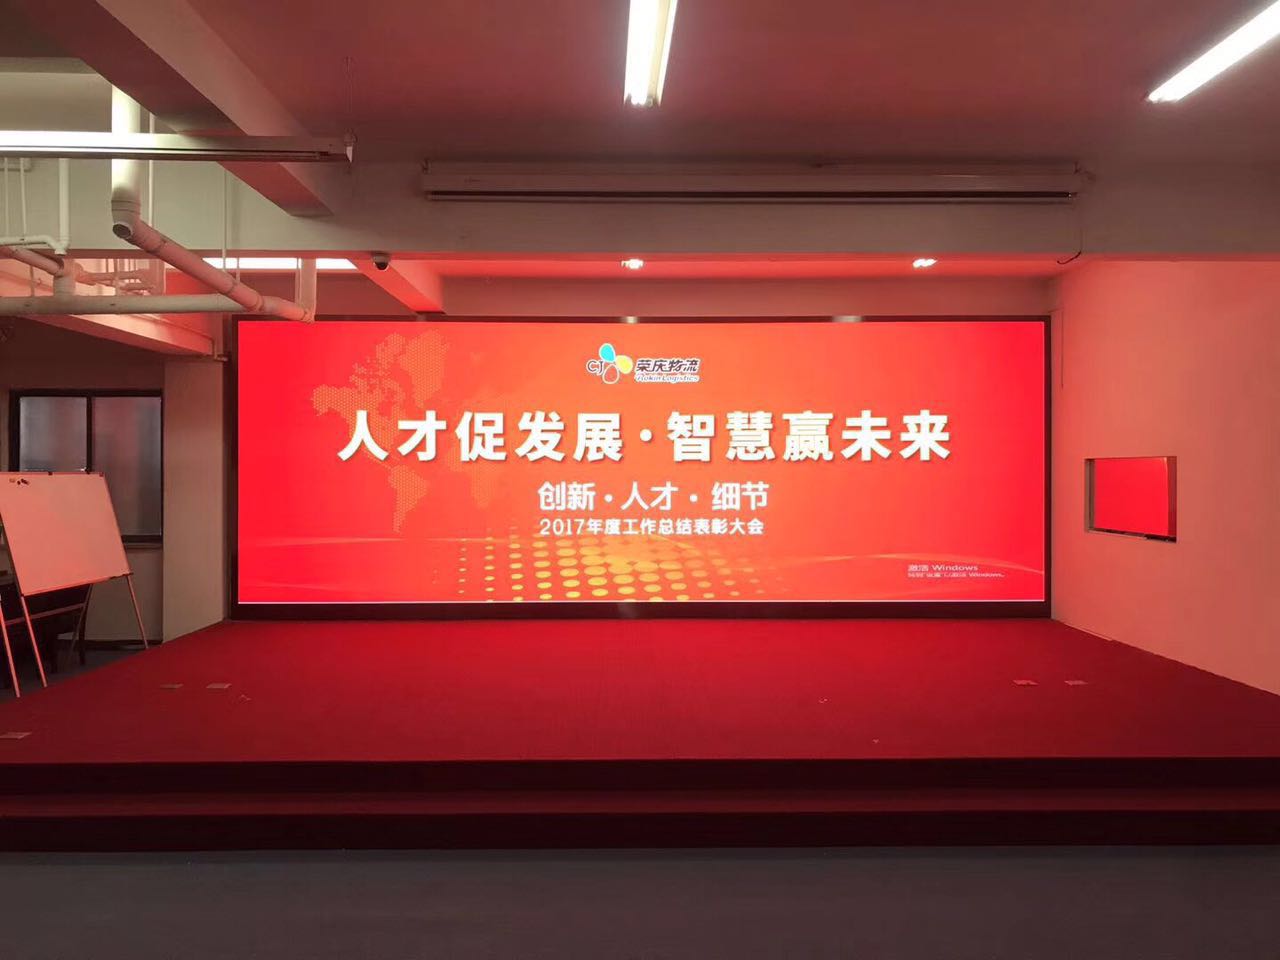 江苏LED显示屏承诺守信 欢迎咨询 上海谙显电子技术供应